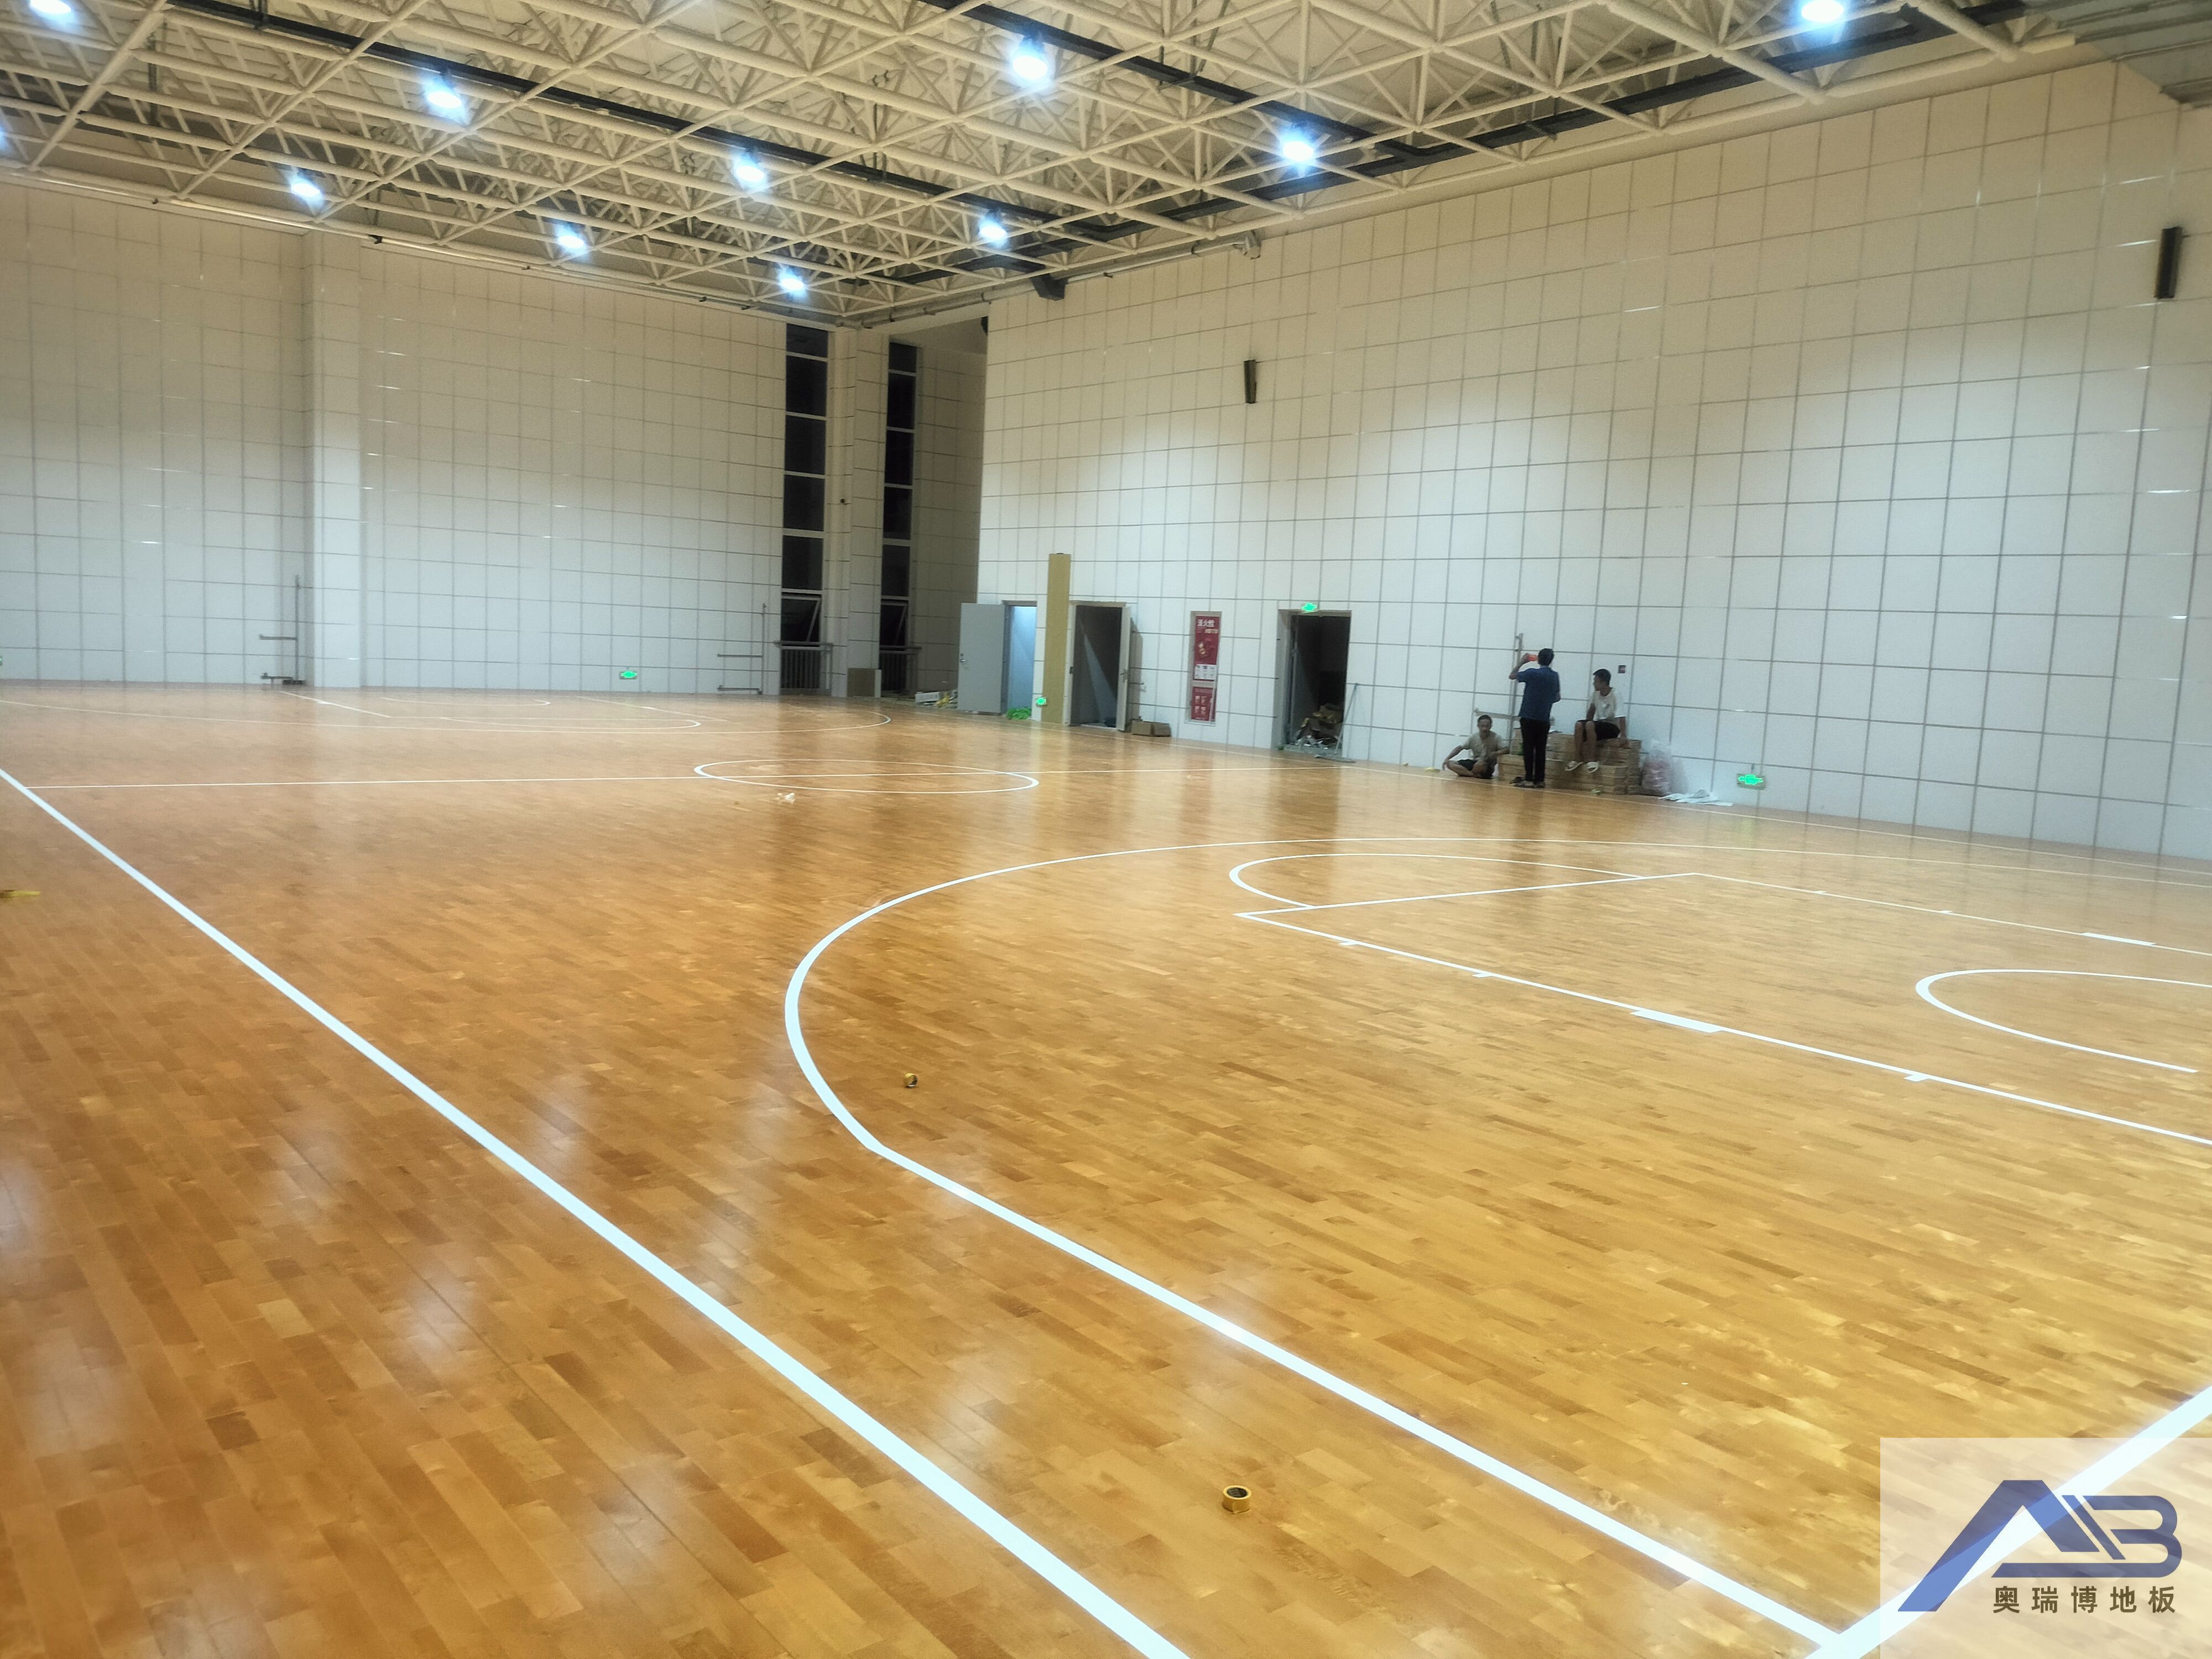 雄安新区体育馆选择奥瑞博运动地板作为地面材料